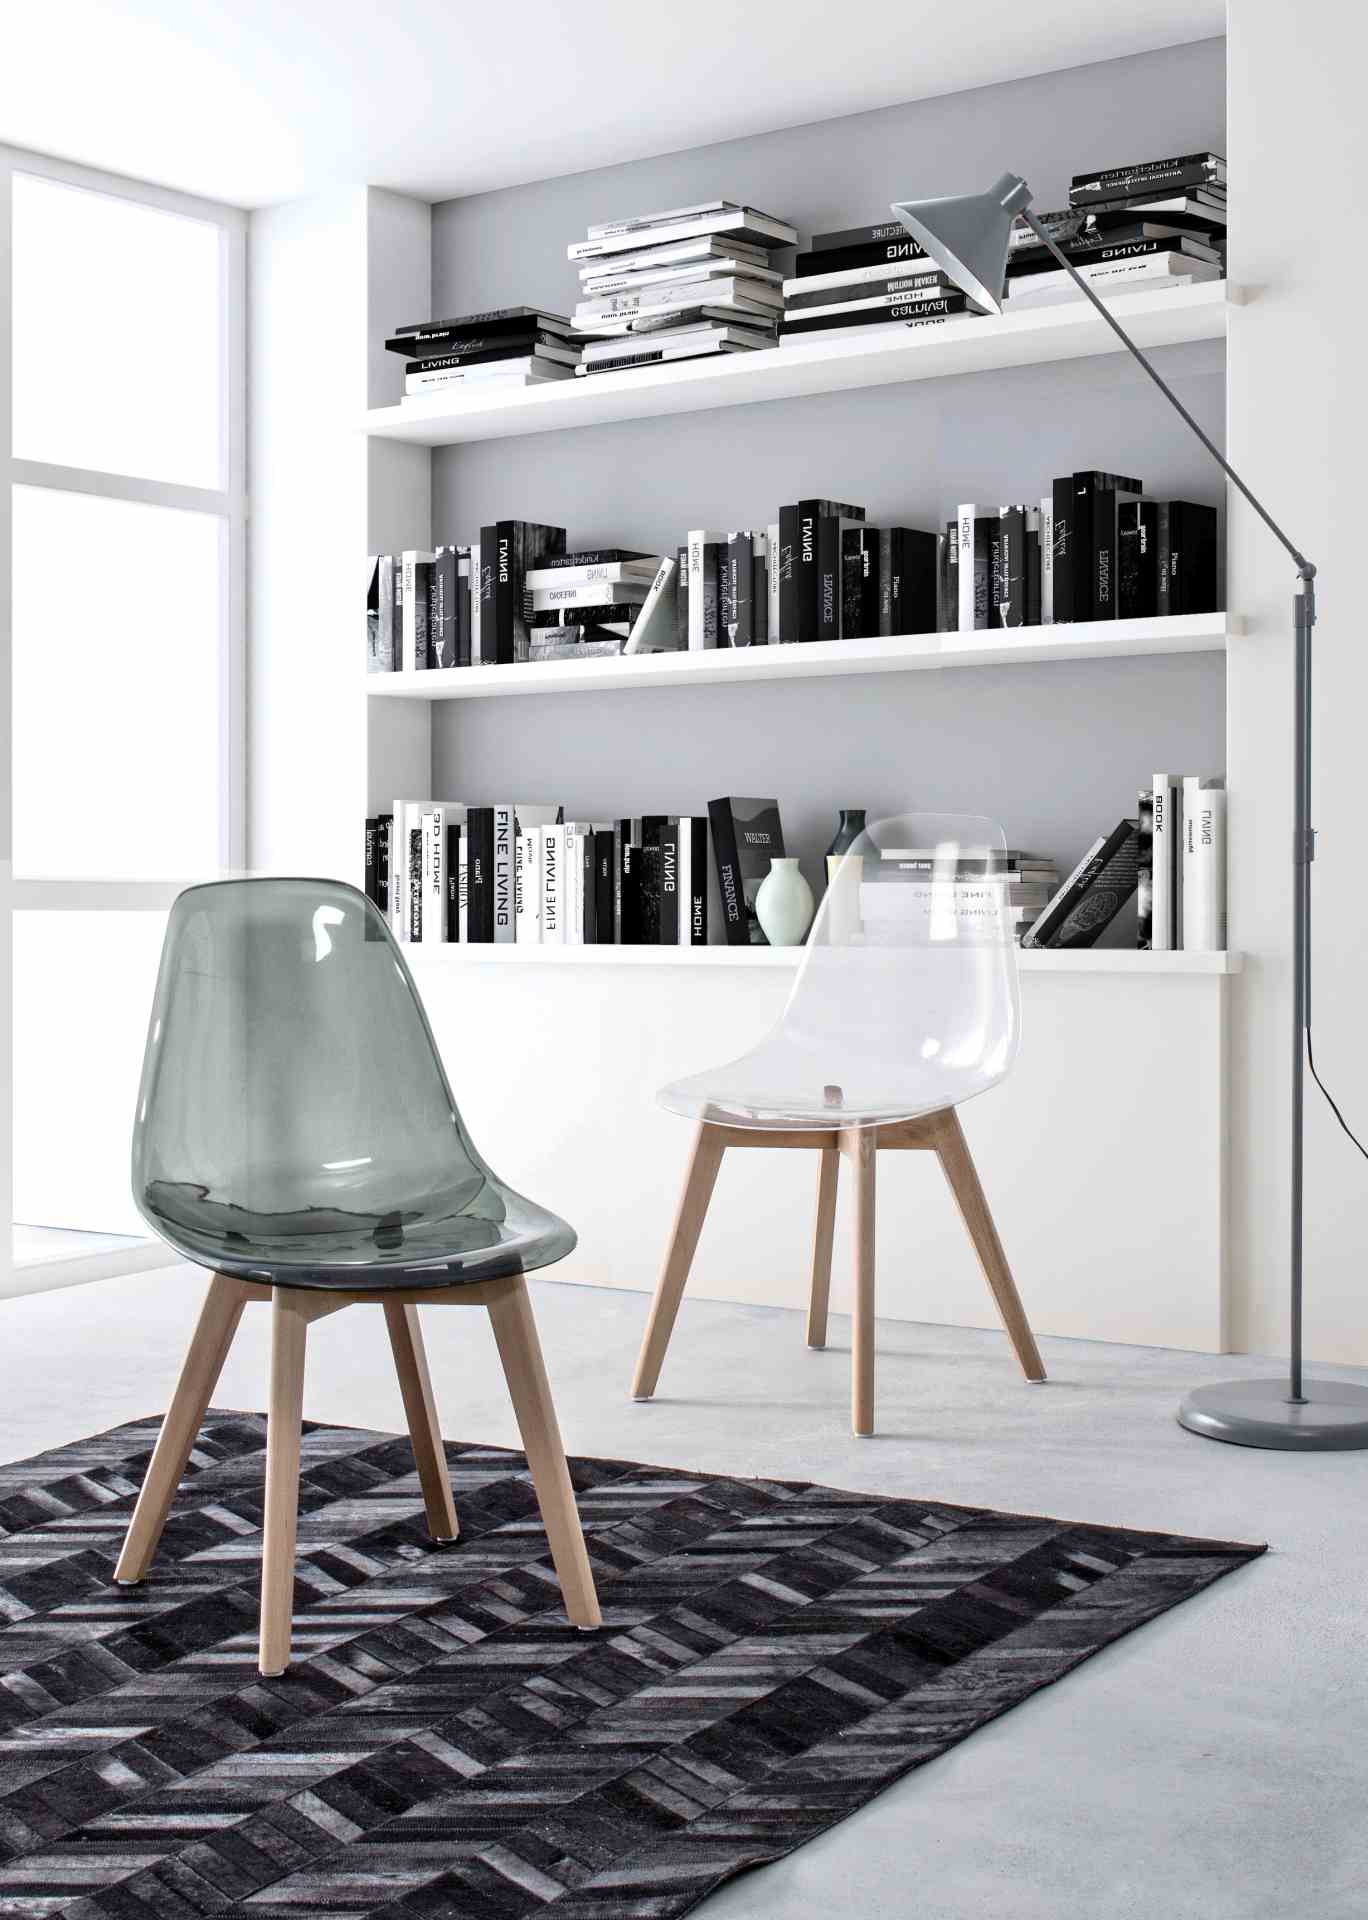 Der Stuhl Easy überzeugt mit seinem modernem aber auch besonderem Design. Gefertigt wurde die Sitzschale aus Kunststoff, welche einen grauen Farbton besitzt. Das Gestell ist aus Buchenholz und hat einen natürlichen Farbton. Die Sitzhöhe beträgt 44 cm.